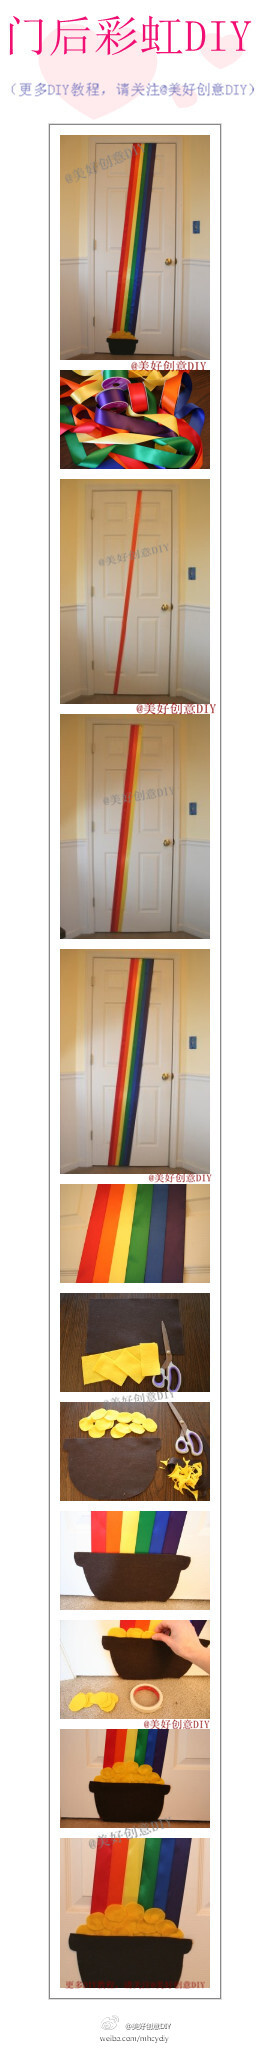 在房间门后diy一道灿烂的彩虹~——更多有趣内容，请关注@美好创意DIY